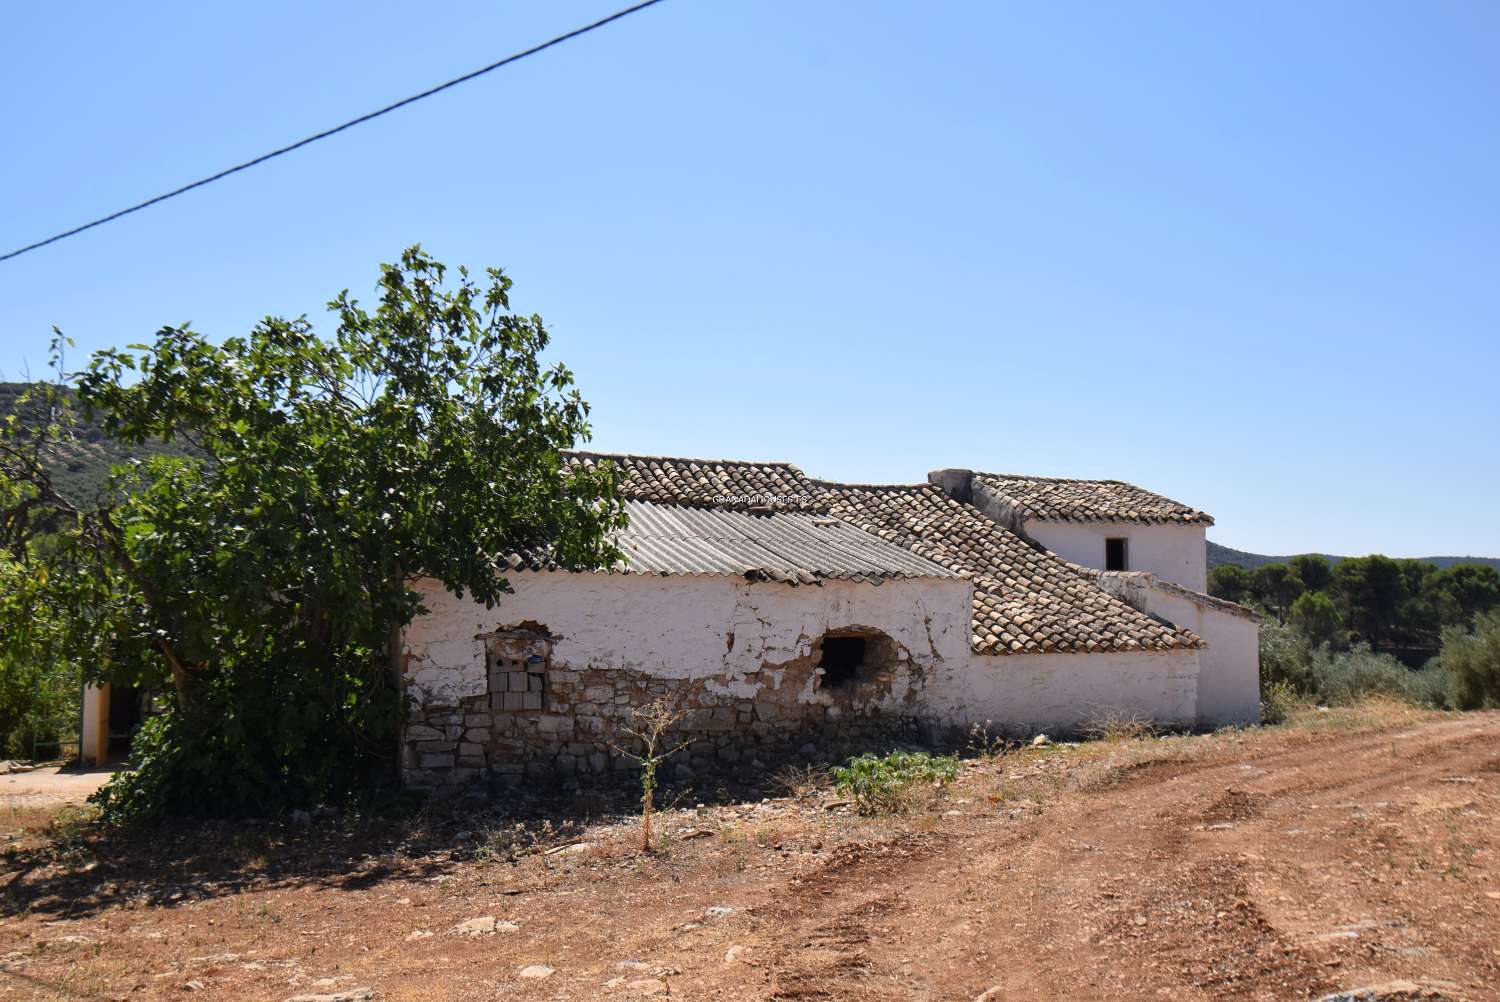 Andalusische boerderij om te hervormen